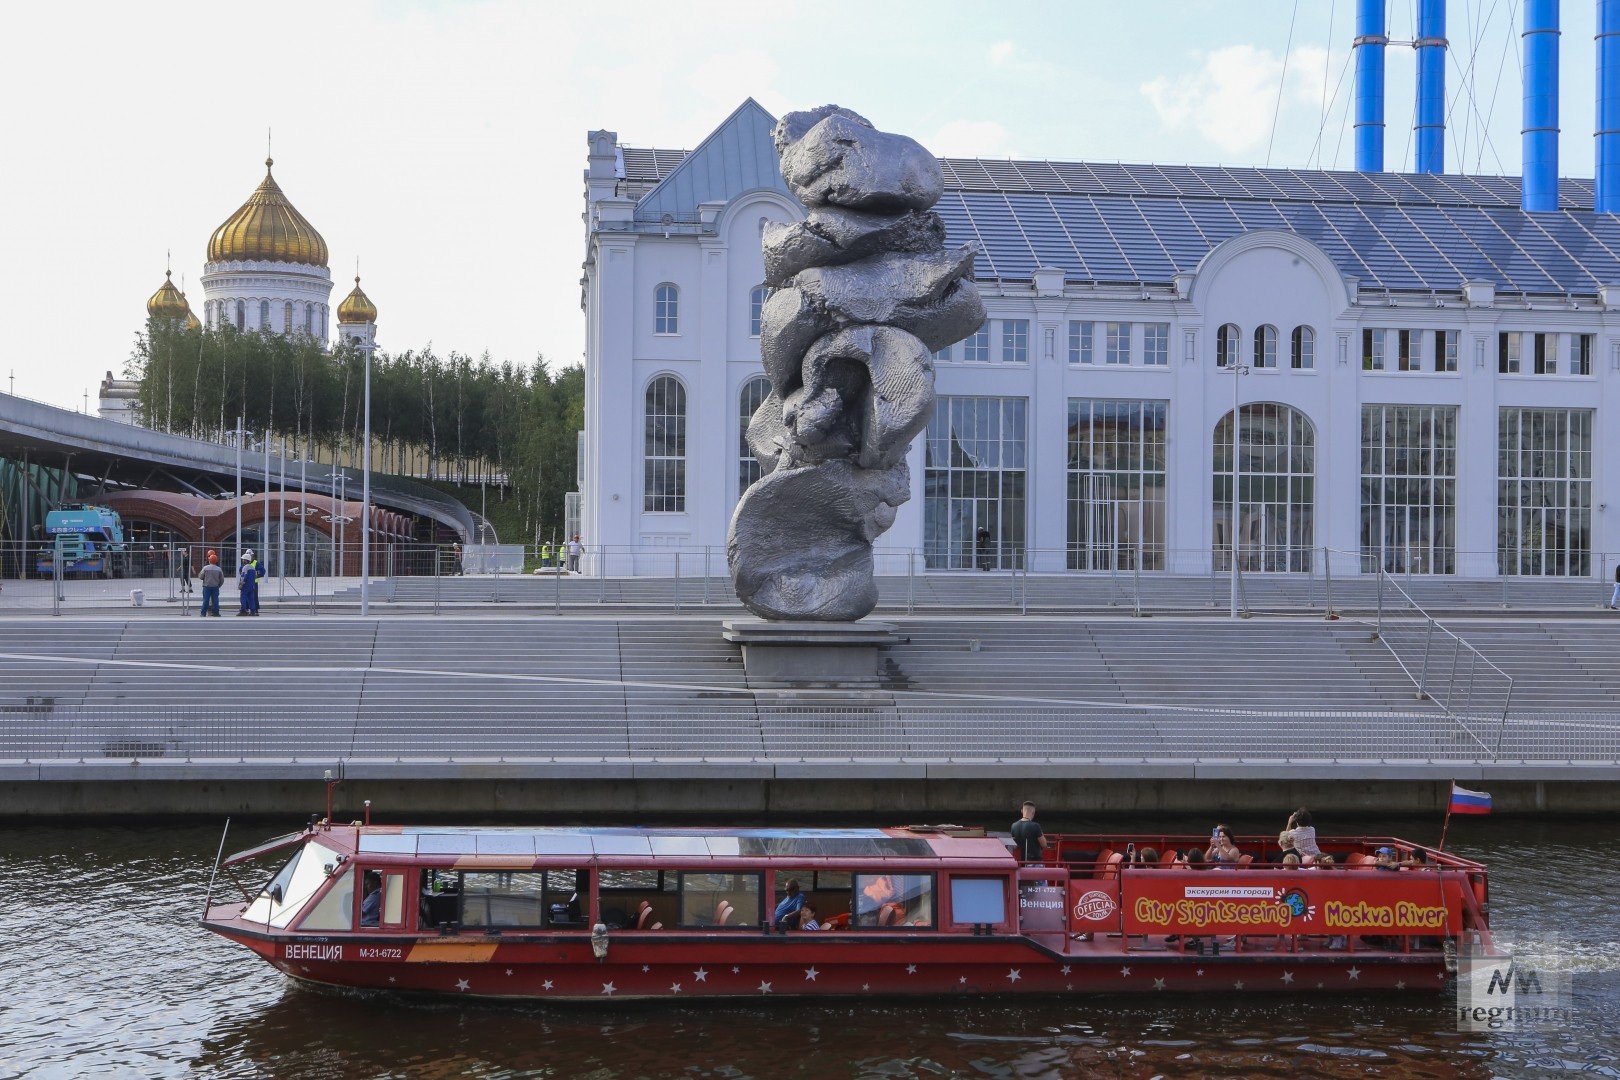 Инсталляция вызвала неоднозначную реакцию у москвичей